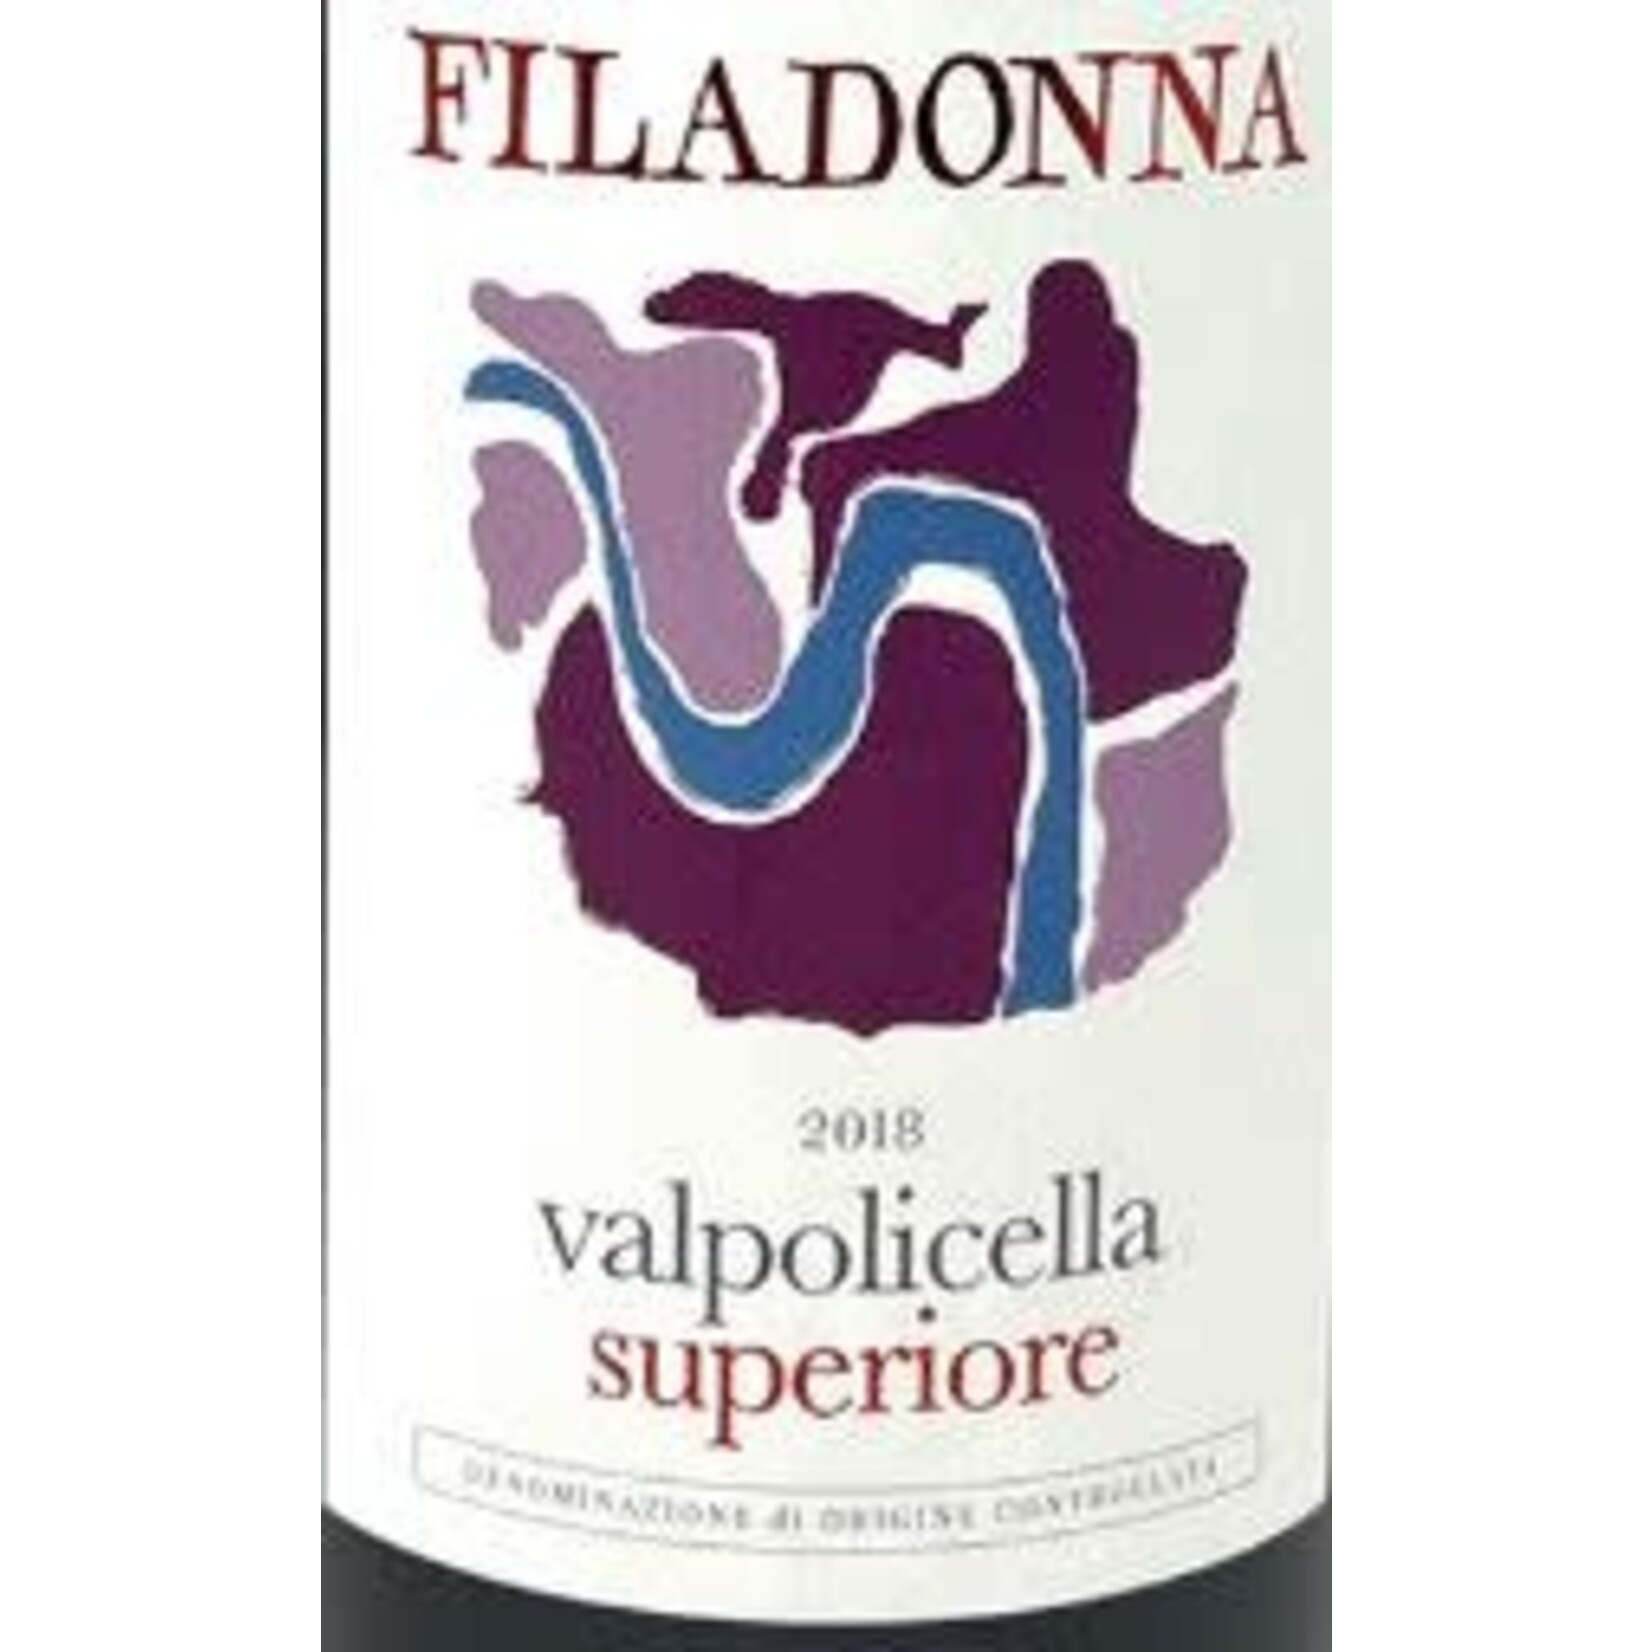 Filadonna Valpolicella DOC Superiore 2019,  Italy